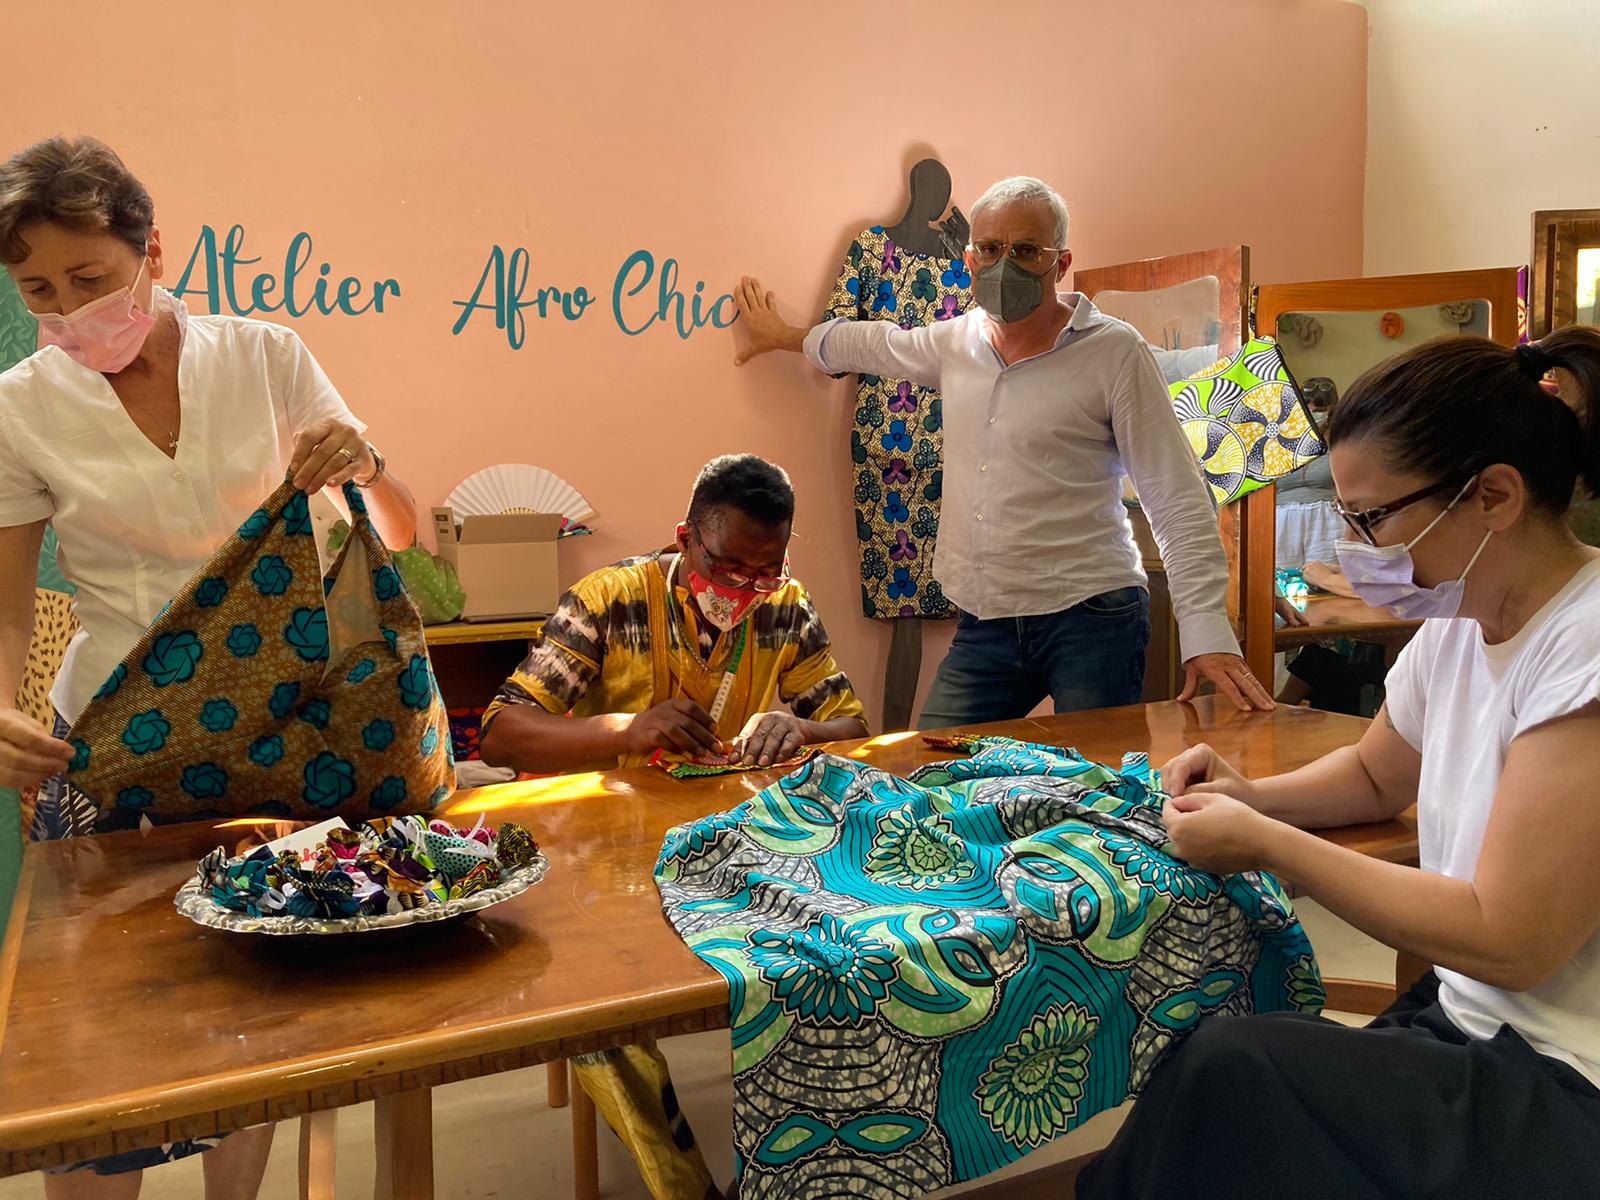 Colori e fantasie africane per le creazioni dell’Atelier Afro Chic